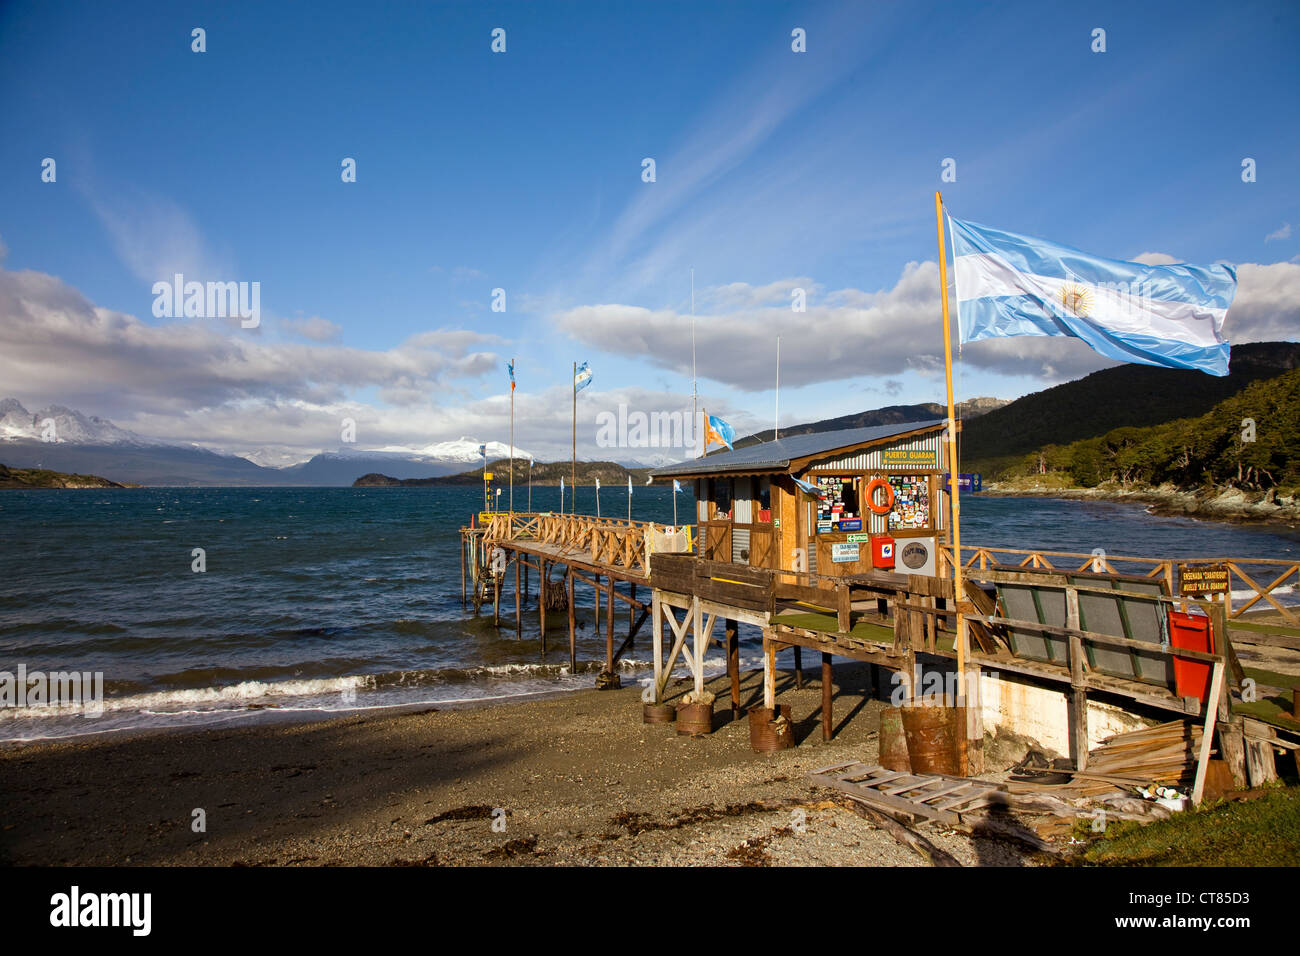 Bahia Ensenada in Parque Nacional Tierra del Fuego Stock Photo